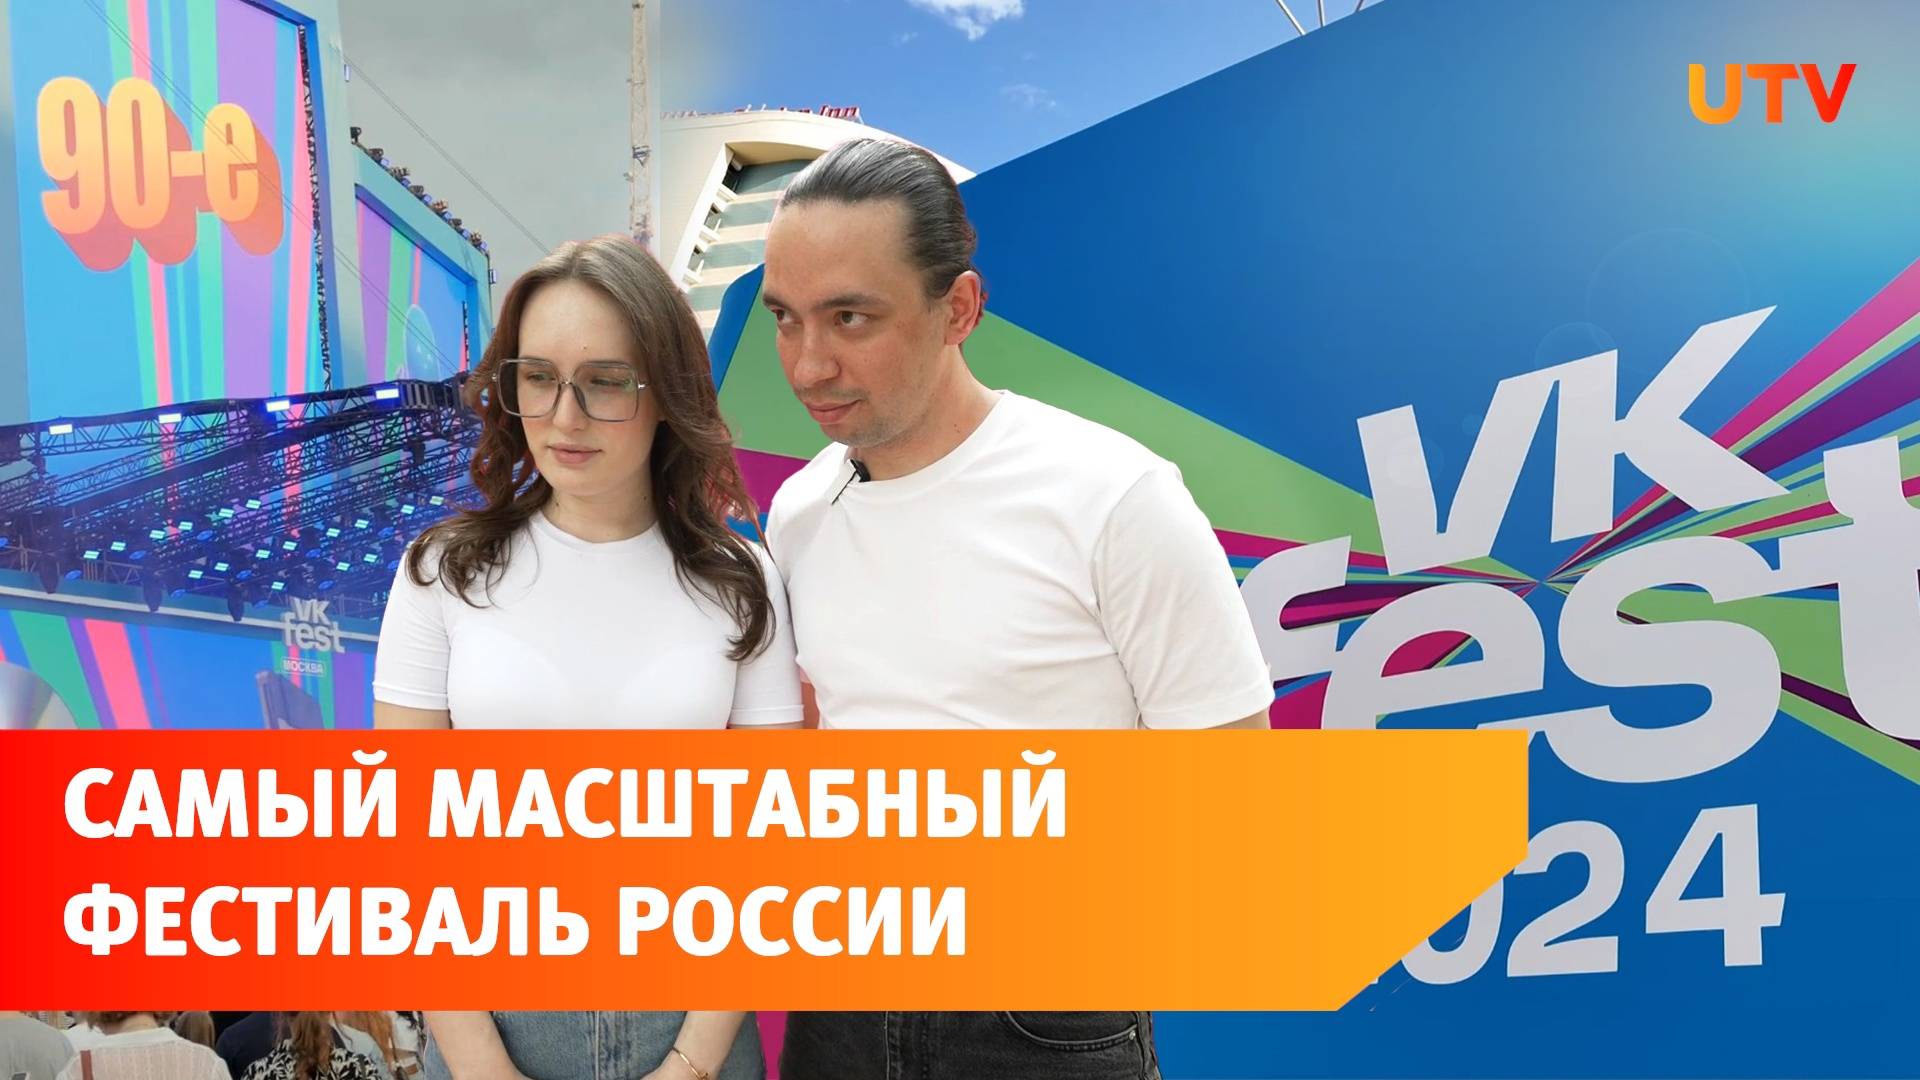 VK Fest 2024 вошёл в Книгу рекордов России